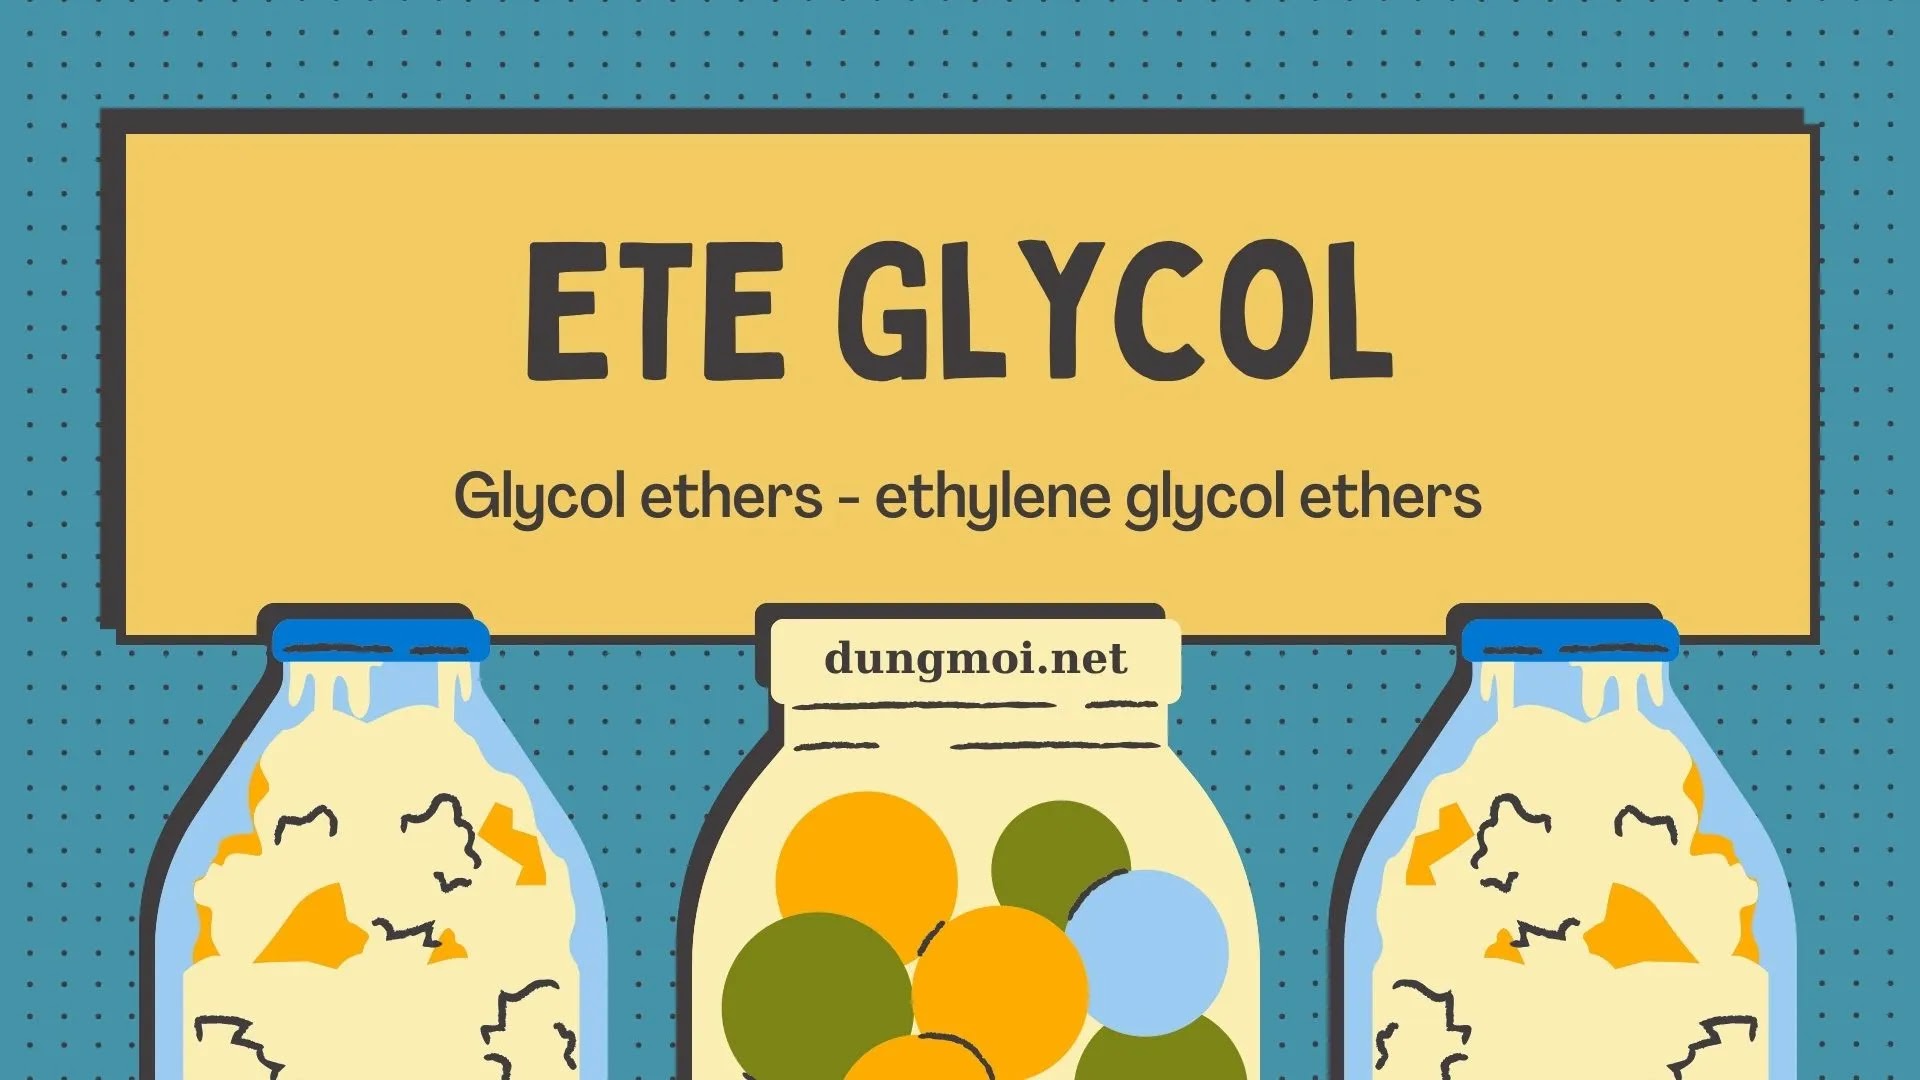 (Glycol ethers) Ete Glycol là gì?